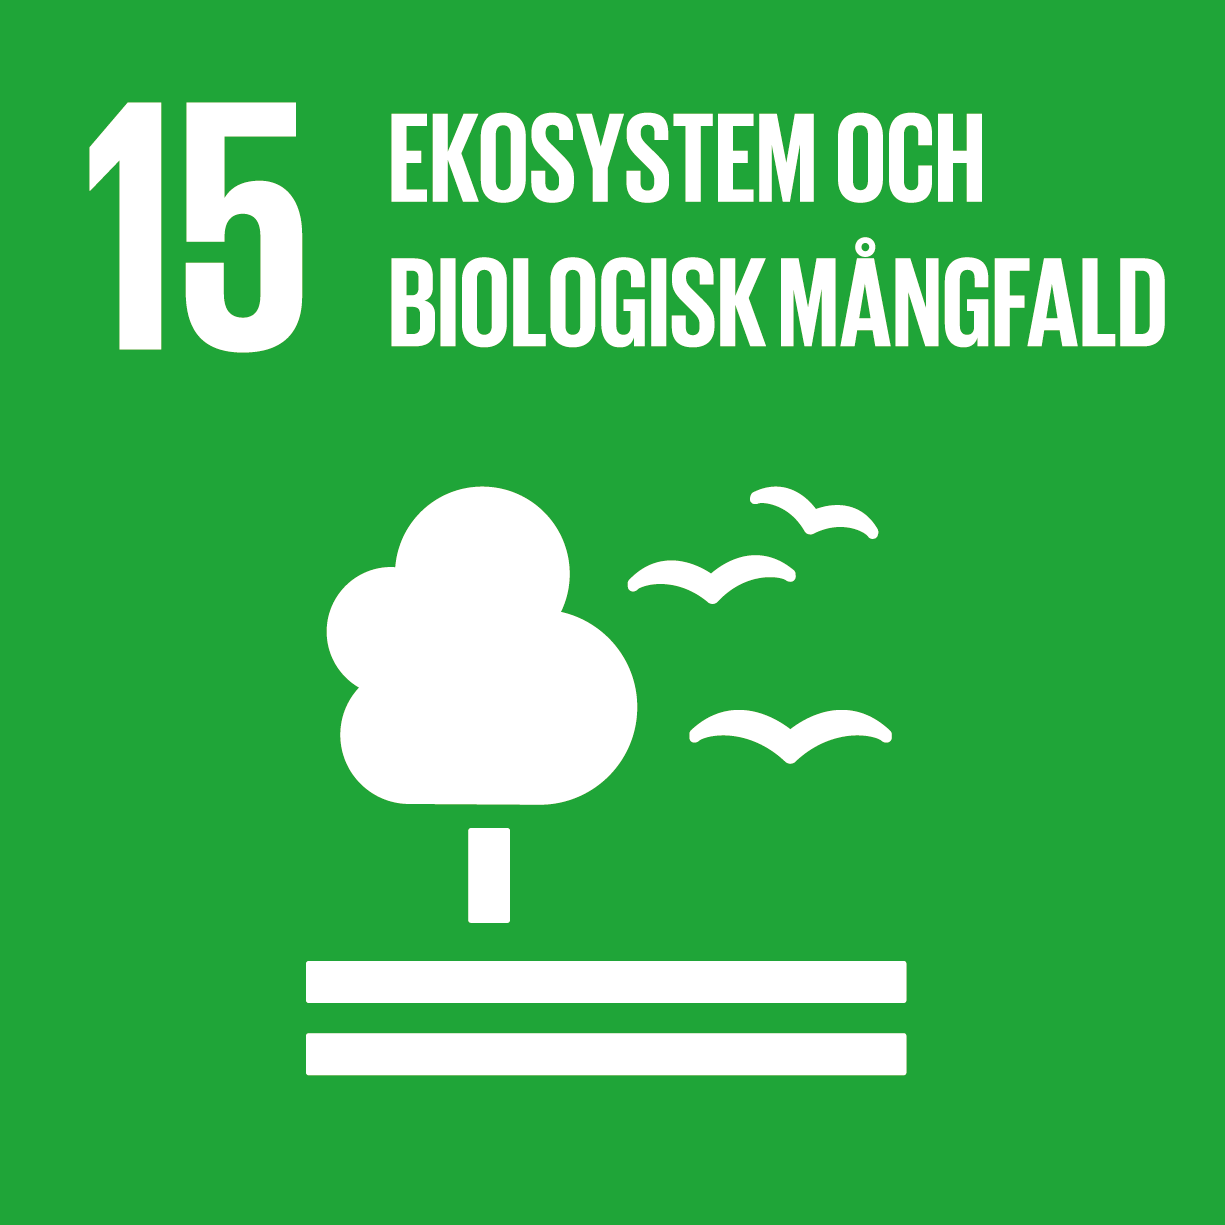 En ikon som visar det fentonde av FN:s globala mål som innebär "ekosystem och biologisk mångfald".